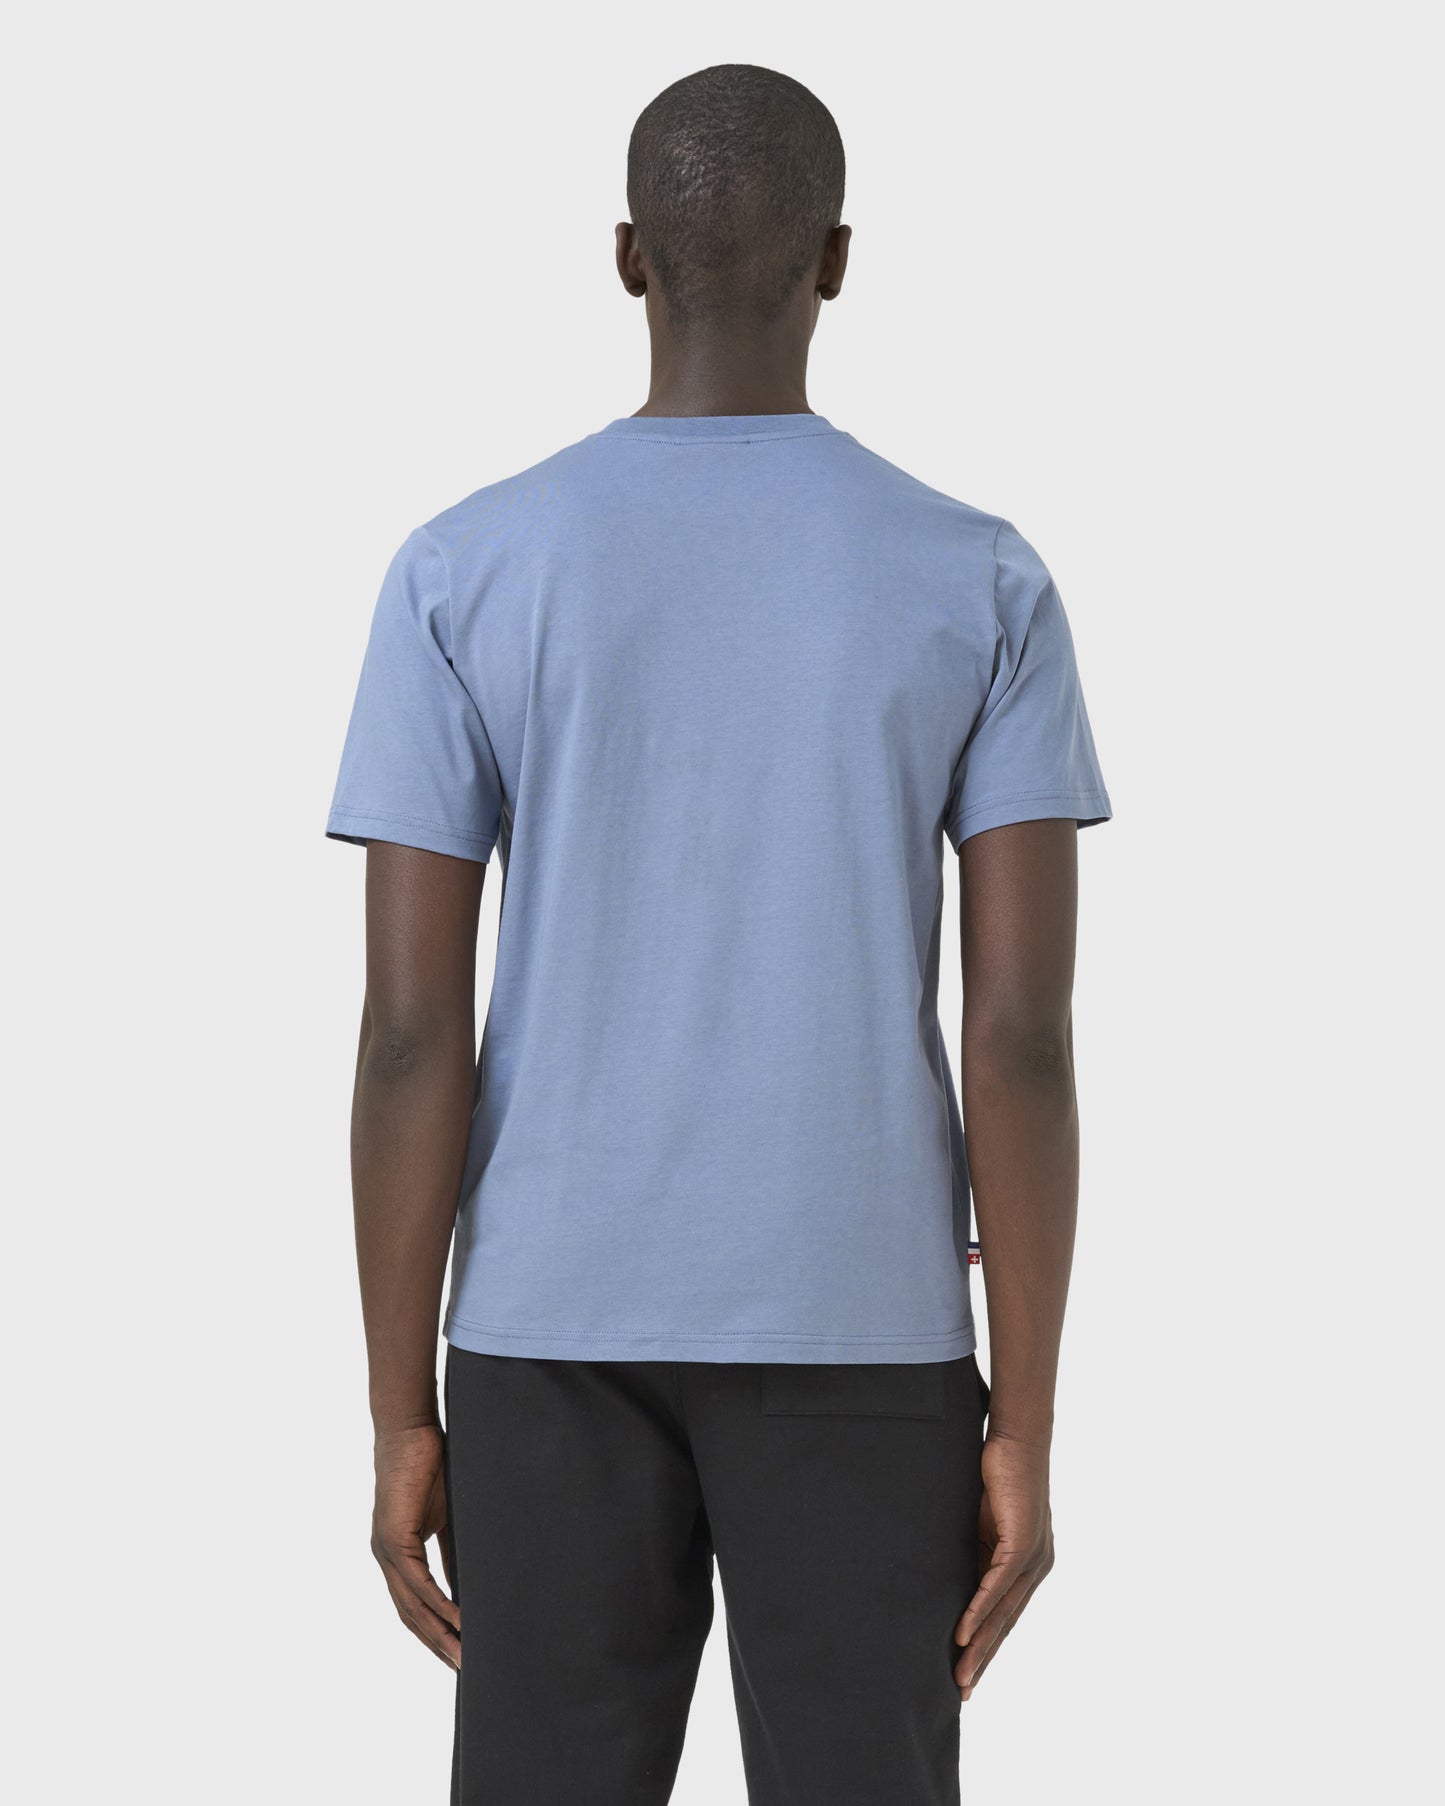 t-shirt-source-bleu-avnier-orelsan-3-silhouette-dos - Bleu béton